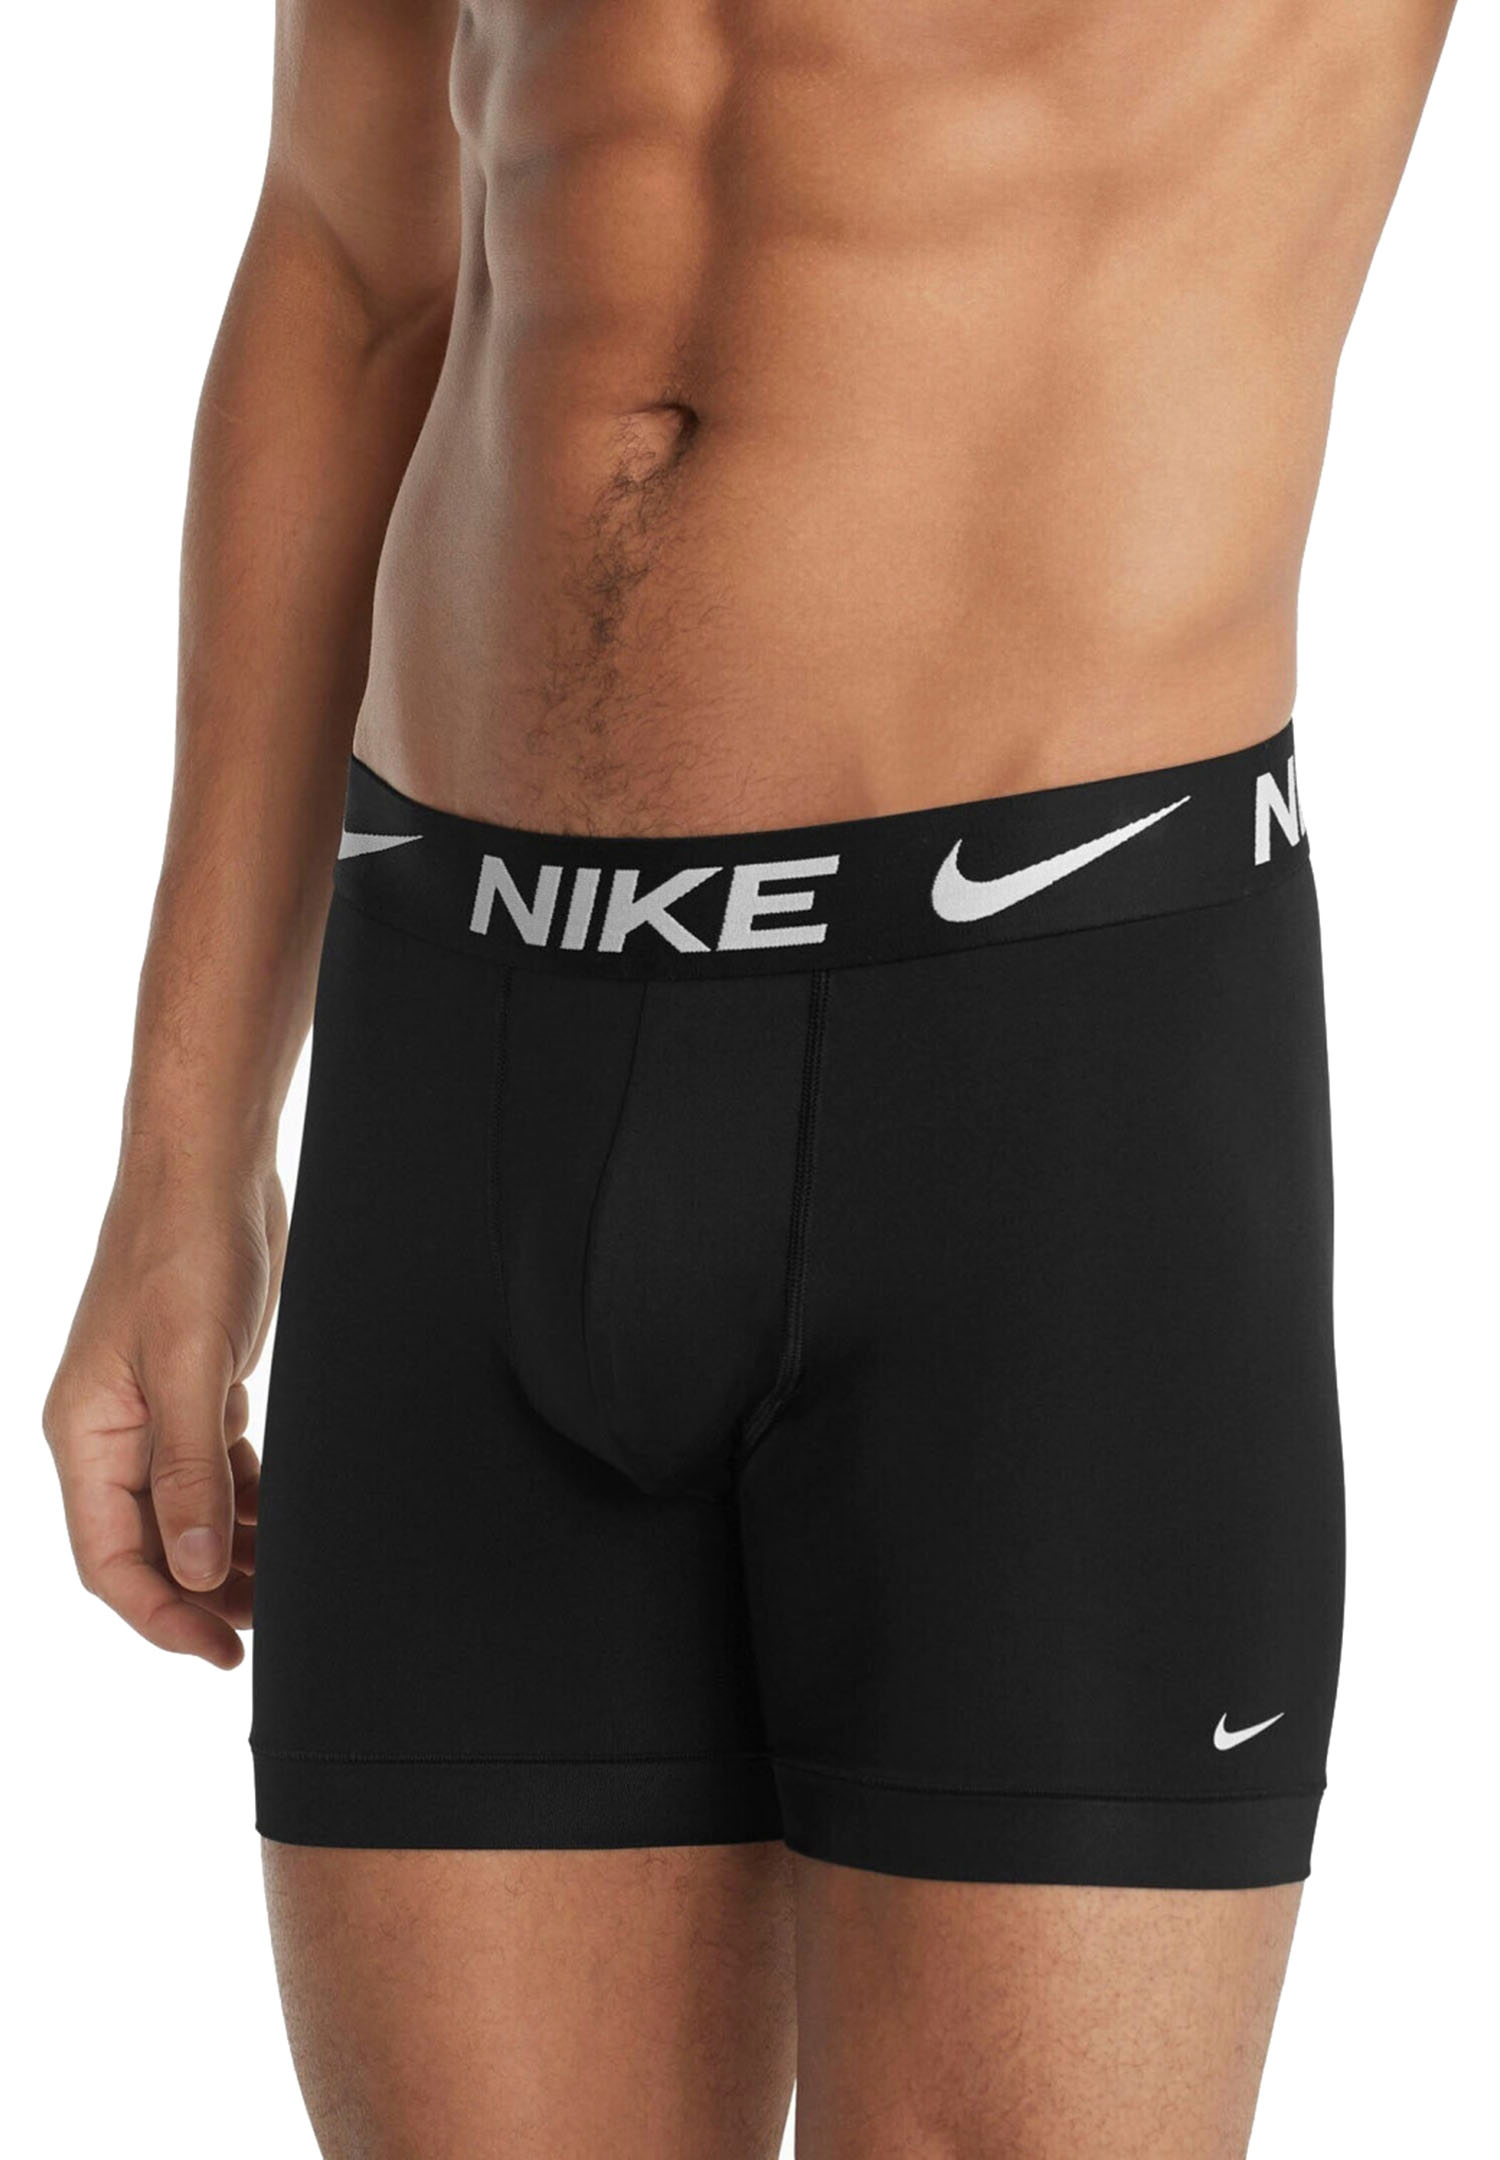 3er Pack Herren Nike Essential Micro Boxer Brief Boxershorts Unterwäsche Pants schwarz